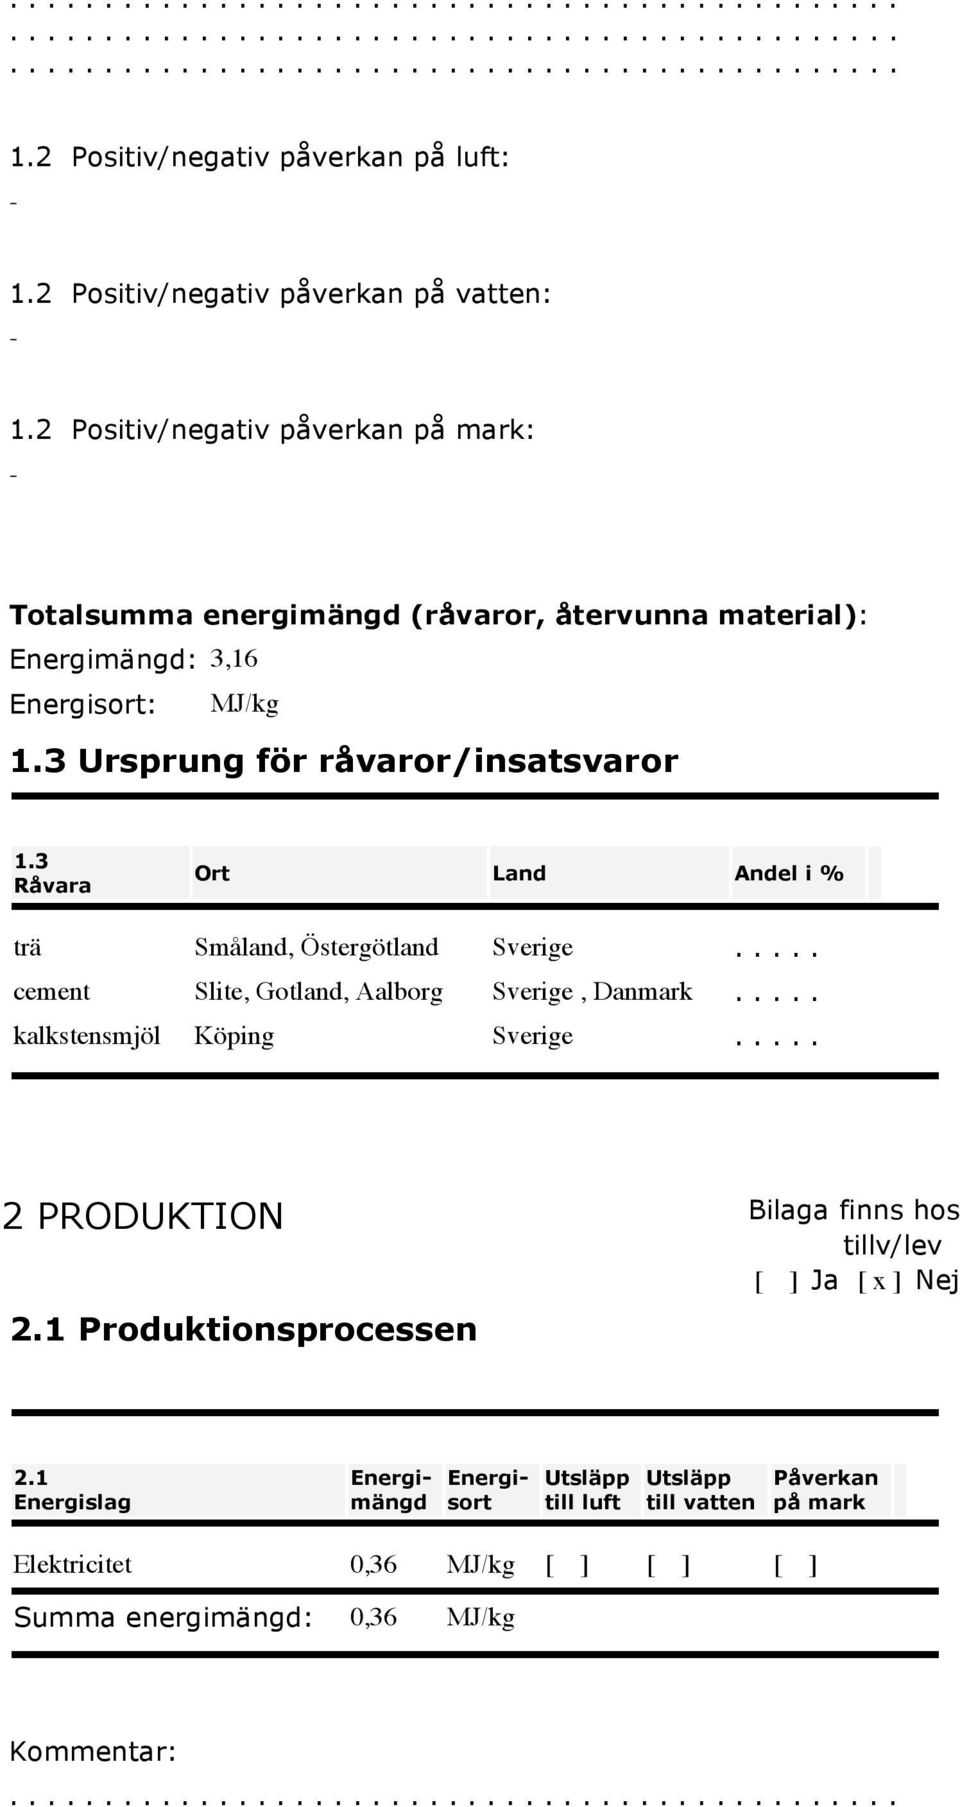 3 Ursprung för råvaror/insatsvaror 1.3 Råvara Ort Land Andel i % trä Småland, Östergötland Sverige..... cement Slite, Gotland, Aalborg Sverige, Danmark.